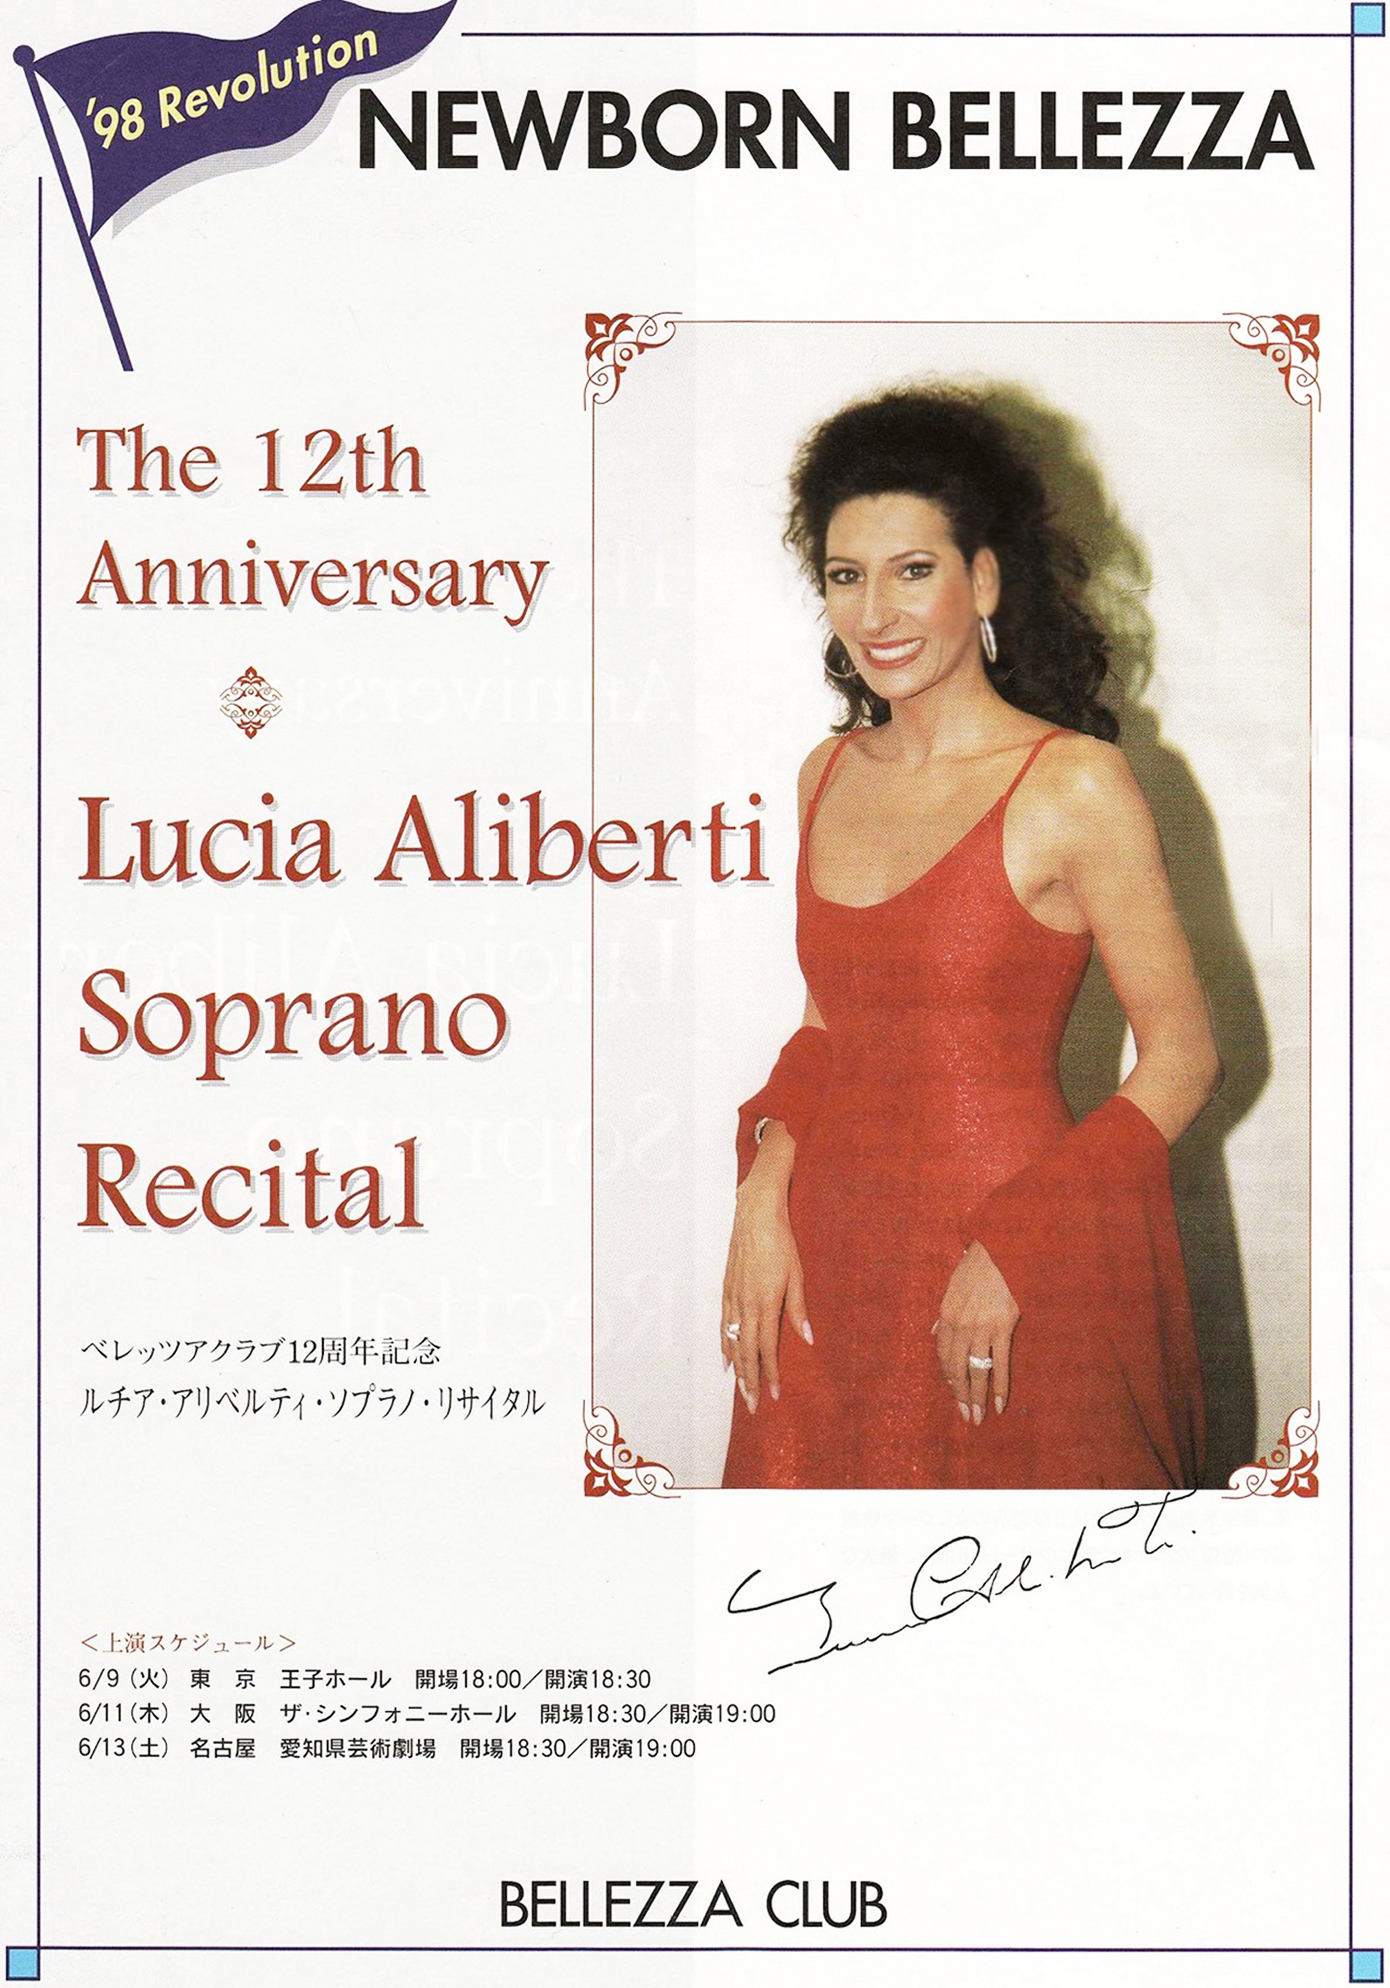 Lucia Aliberti⚘"The 12th Anniversary Newborn Bellezza"⚘Suntory Hall⚘Tokyo⚘Concert⚘Fans Club⚘Autograph Session⚘:http://www.luciaaliberti.it #luciaaliberti #bellezzaclub #concert #suntoryhall #tokyo #autographsession